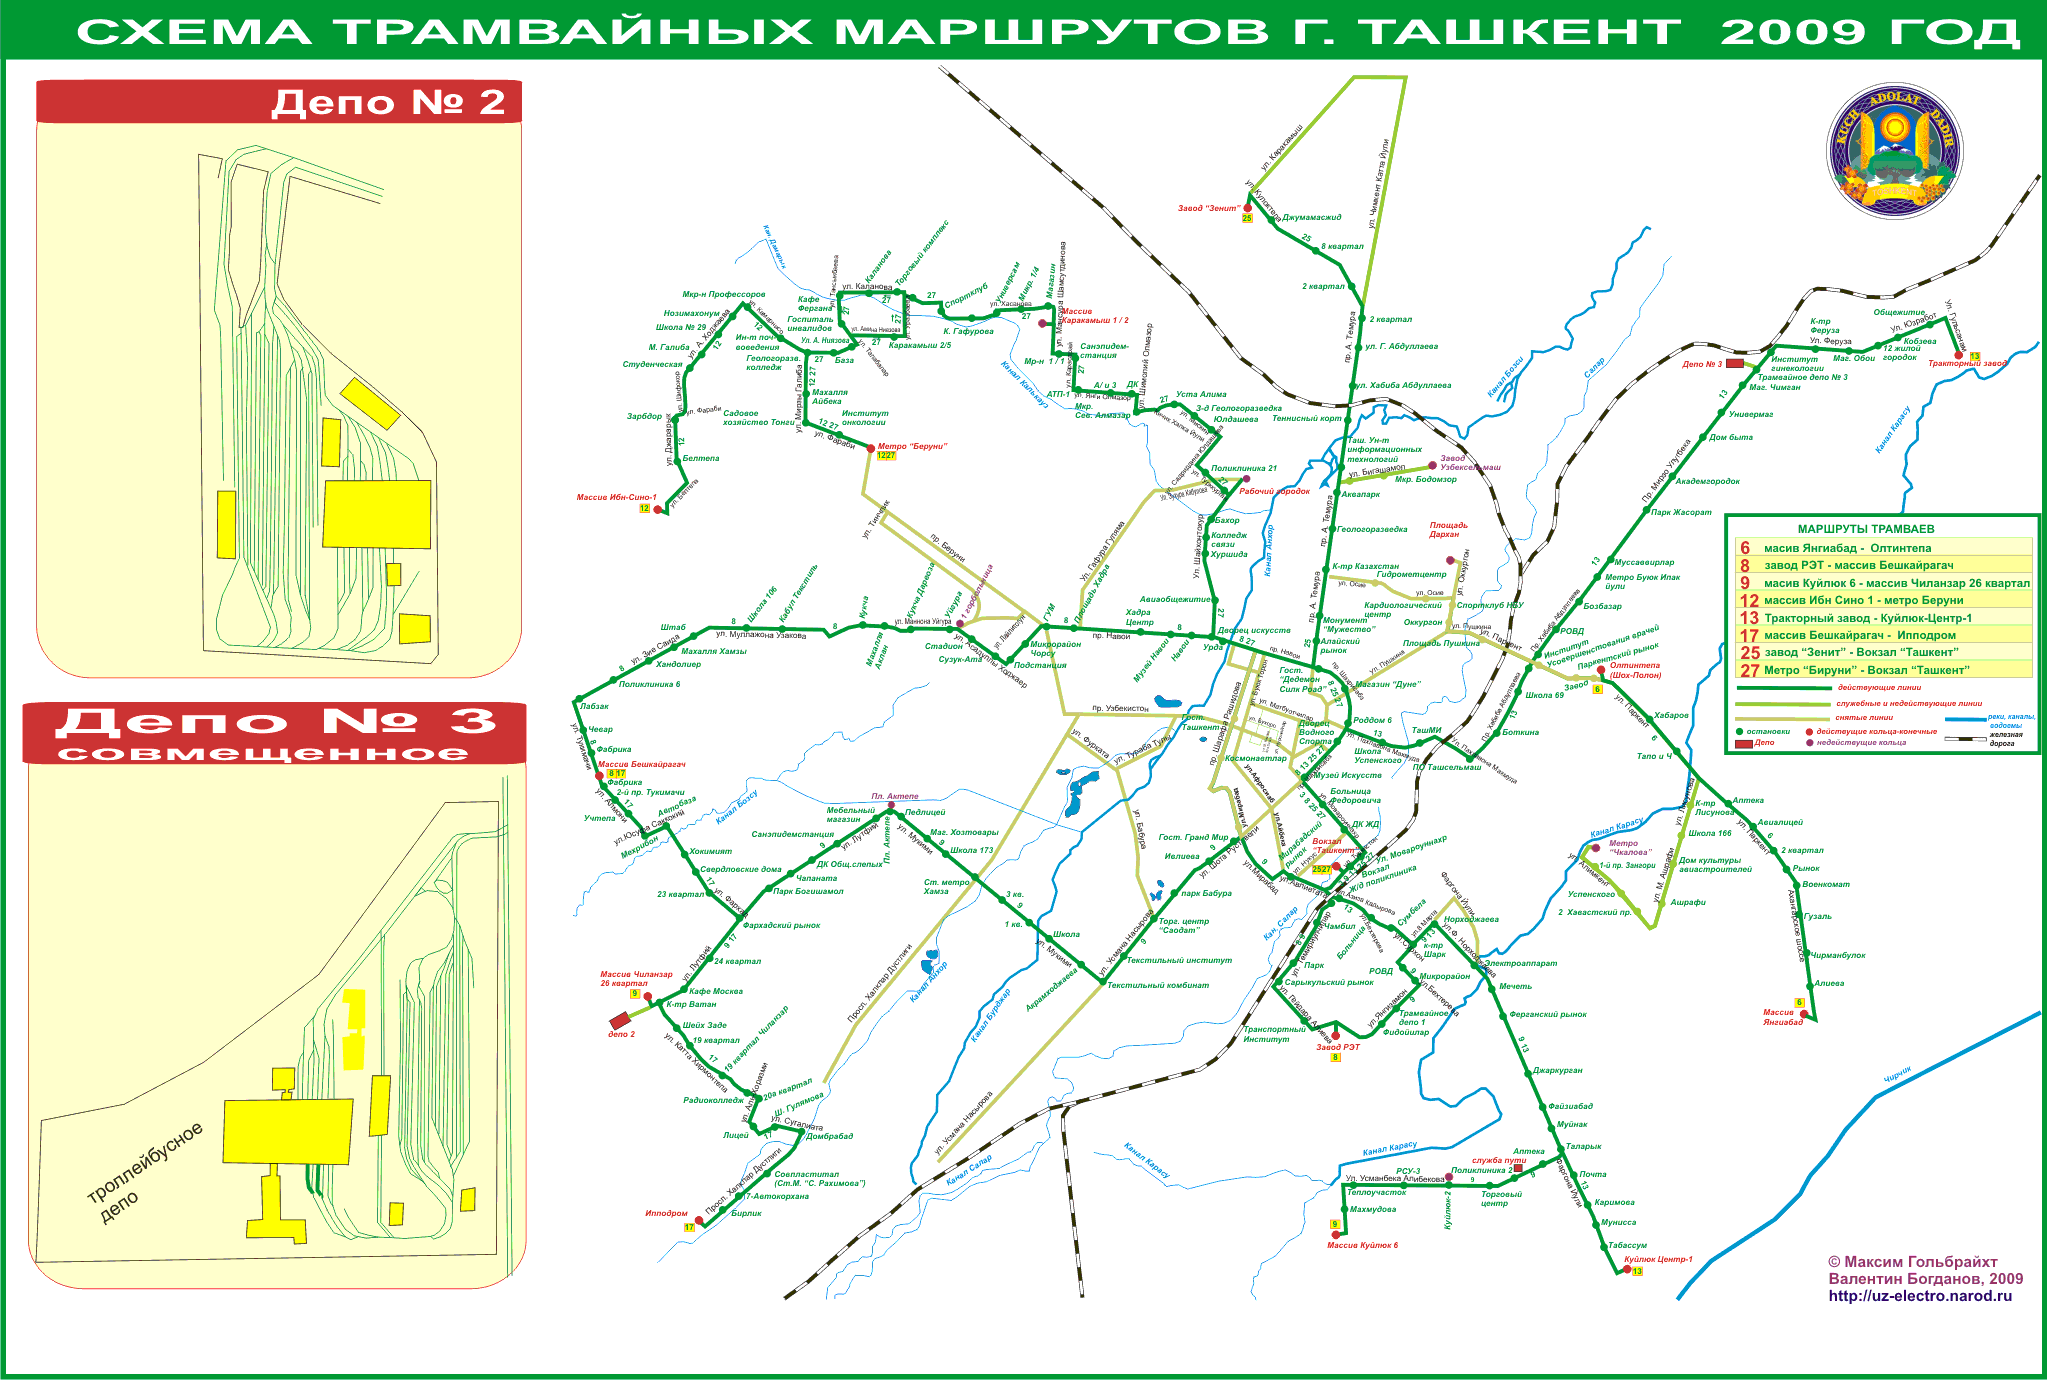 Ташкент — Схемы